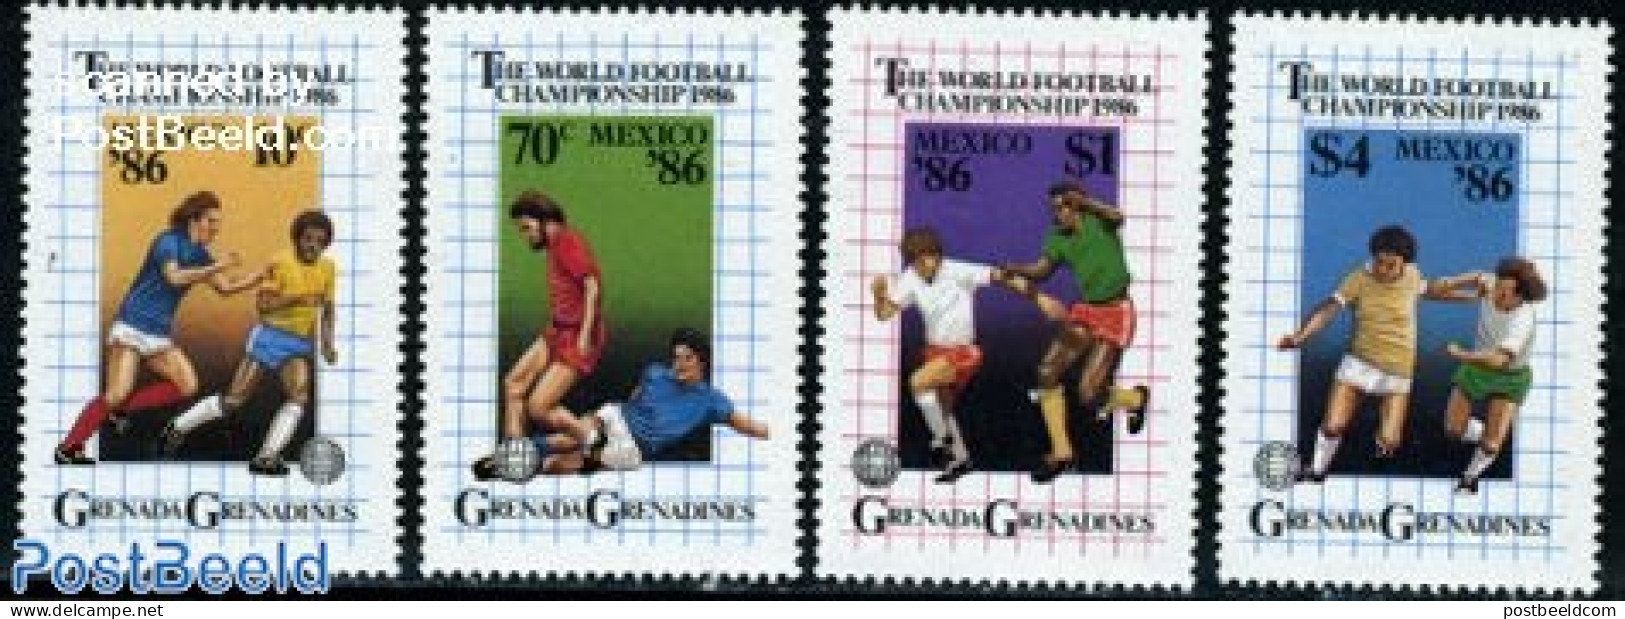 Grenada Grenadines 1986 World Cup Football 4v, Mint NH, Sport - Football - Grenada (1974-...)